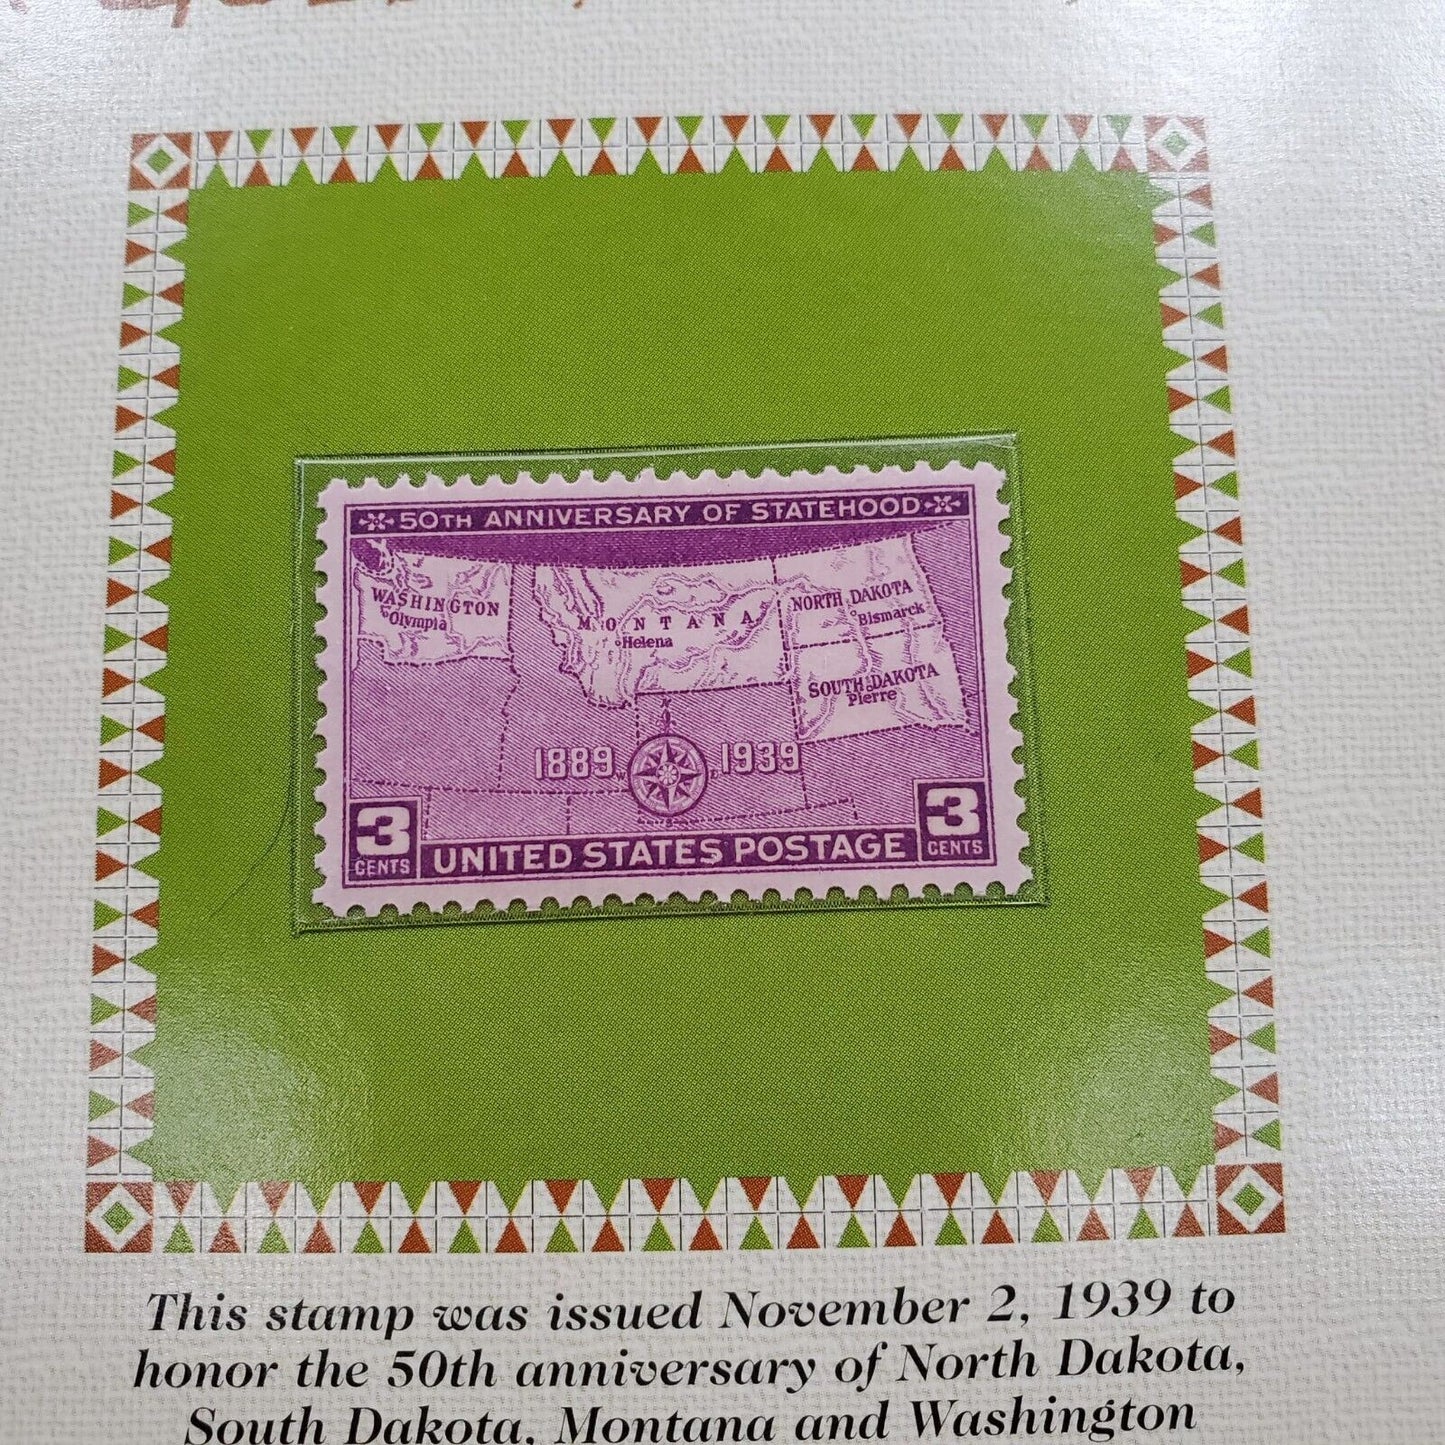 2004 P & D Sacagawea Gold Dollars & 1939 USA 3C Stamp Uncirculated Sheet